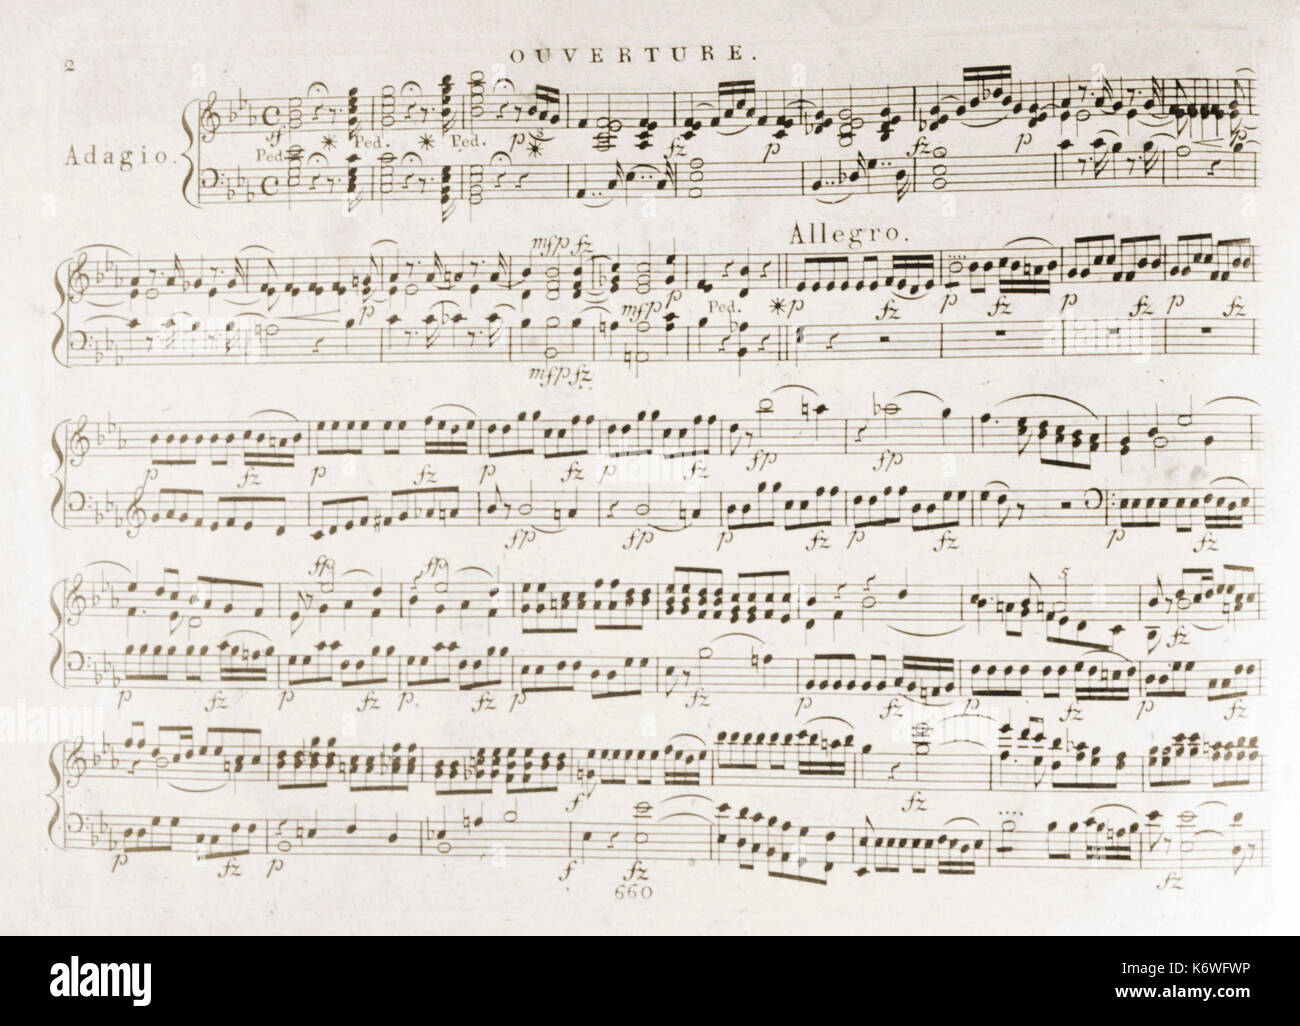 Réduction de piano de score - début de l'ouverture de Wolfgang Amadeus Mozart  La Flûte enchantée' ' '.